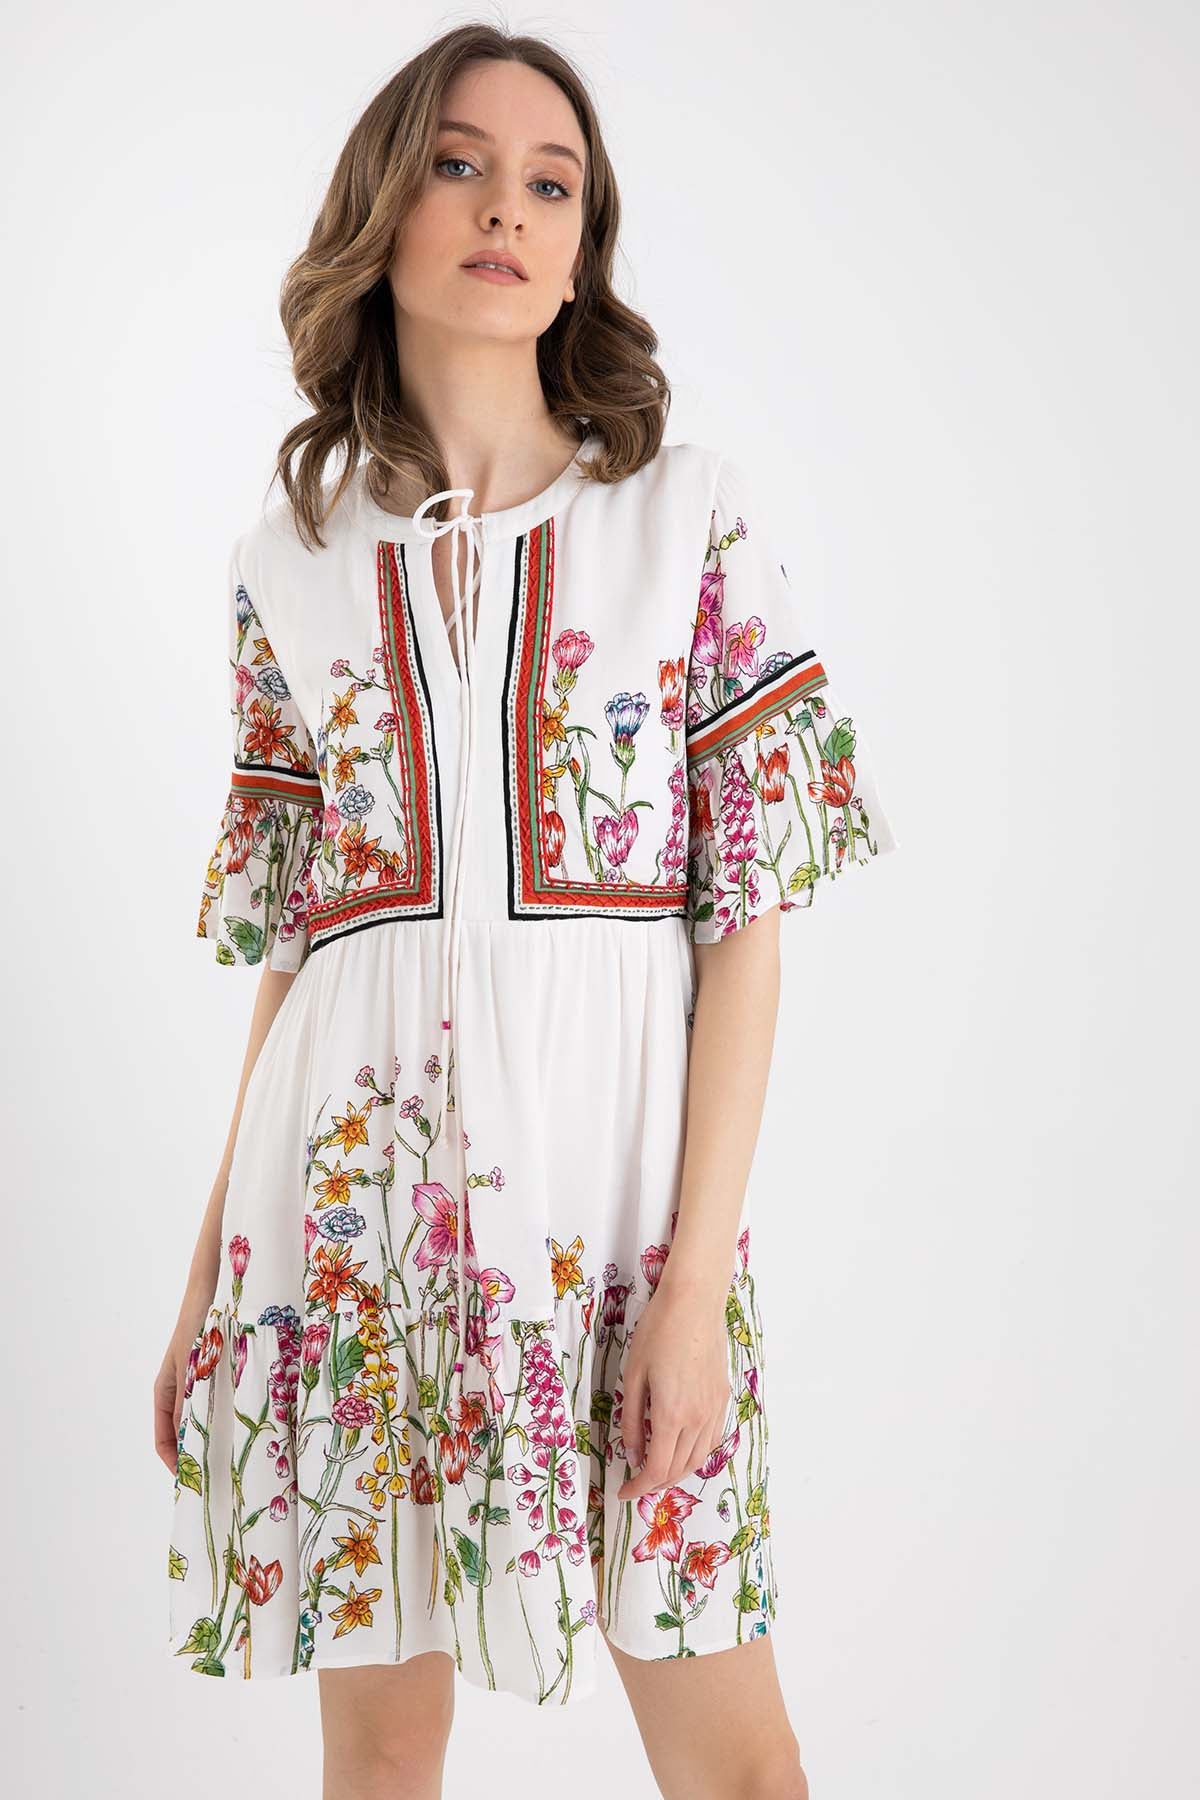 Rene Derhy Çiçek Desenli Diz Üstü Elbise-Libas Trendy Fashion Store